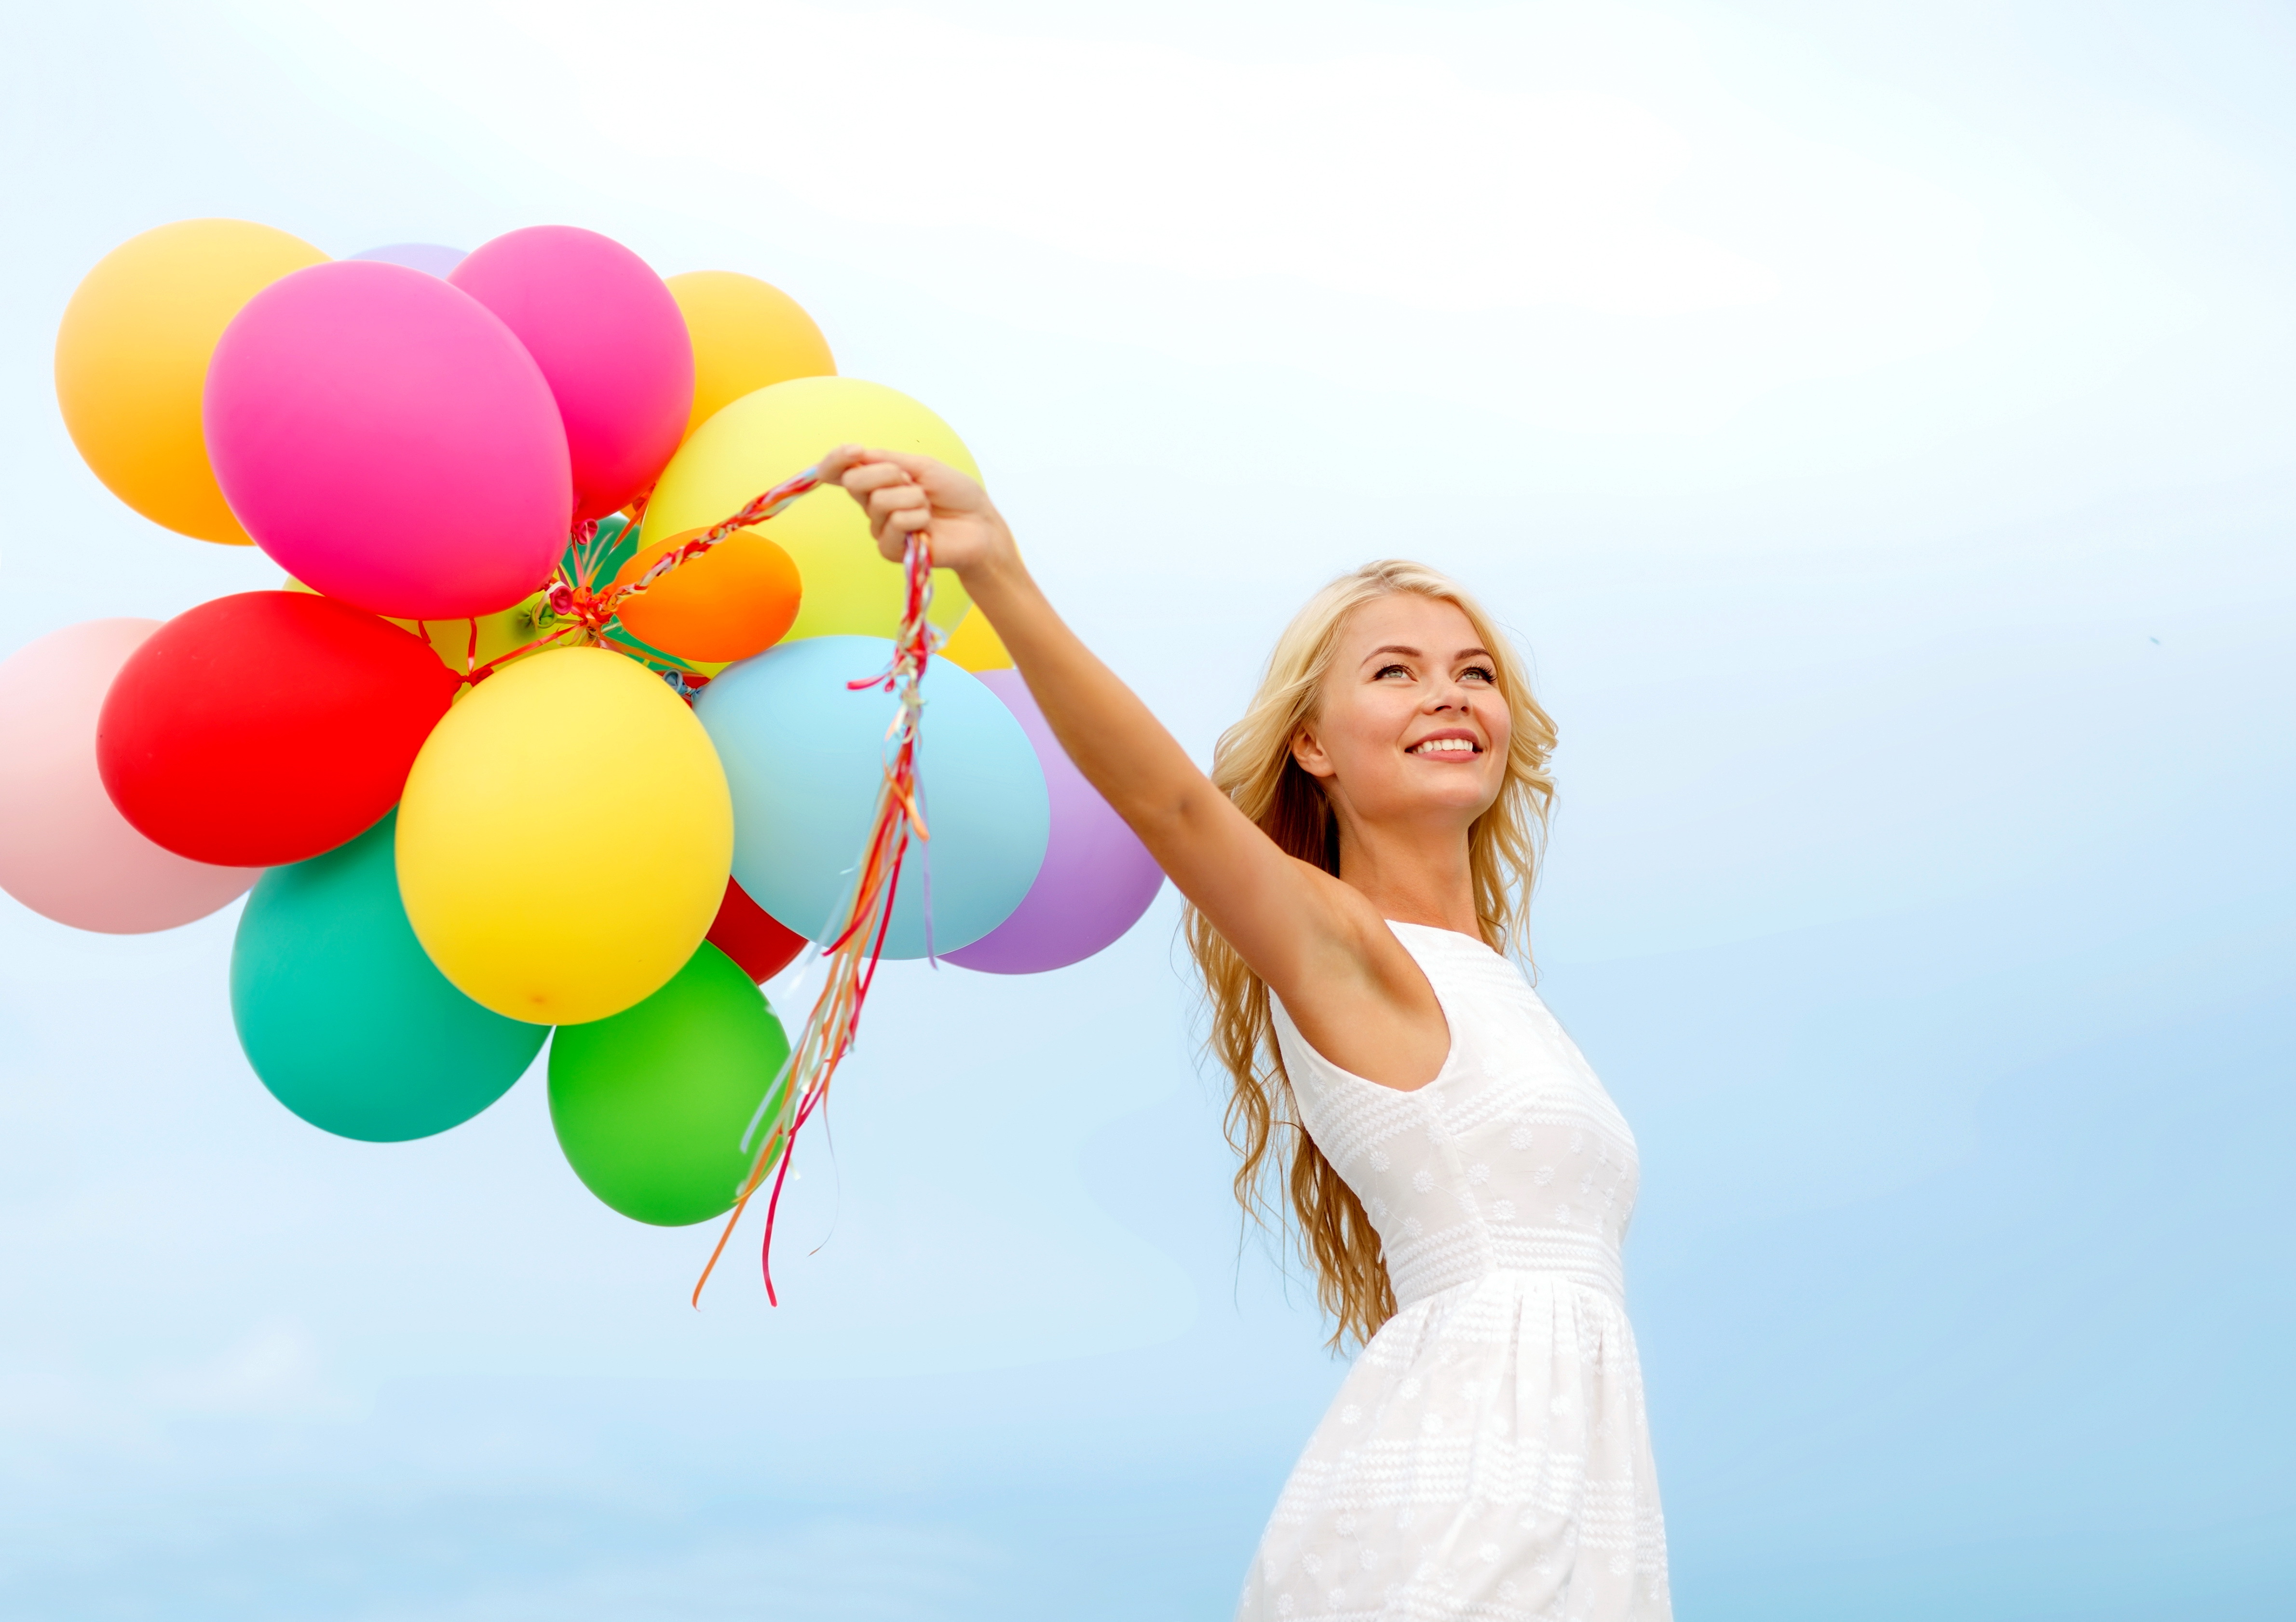 Ярких впечатлений в жизни. Девушка с воздушными шарами. Девушка с шариками воздушными. Счастеь и воздушный шарик. Женщина с разноцветными шарами.